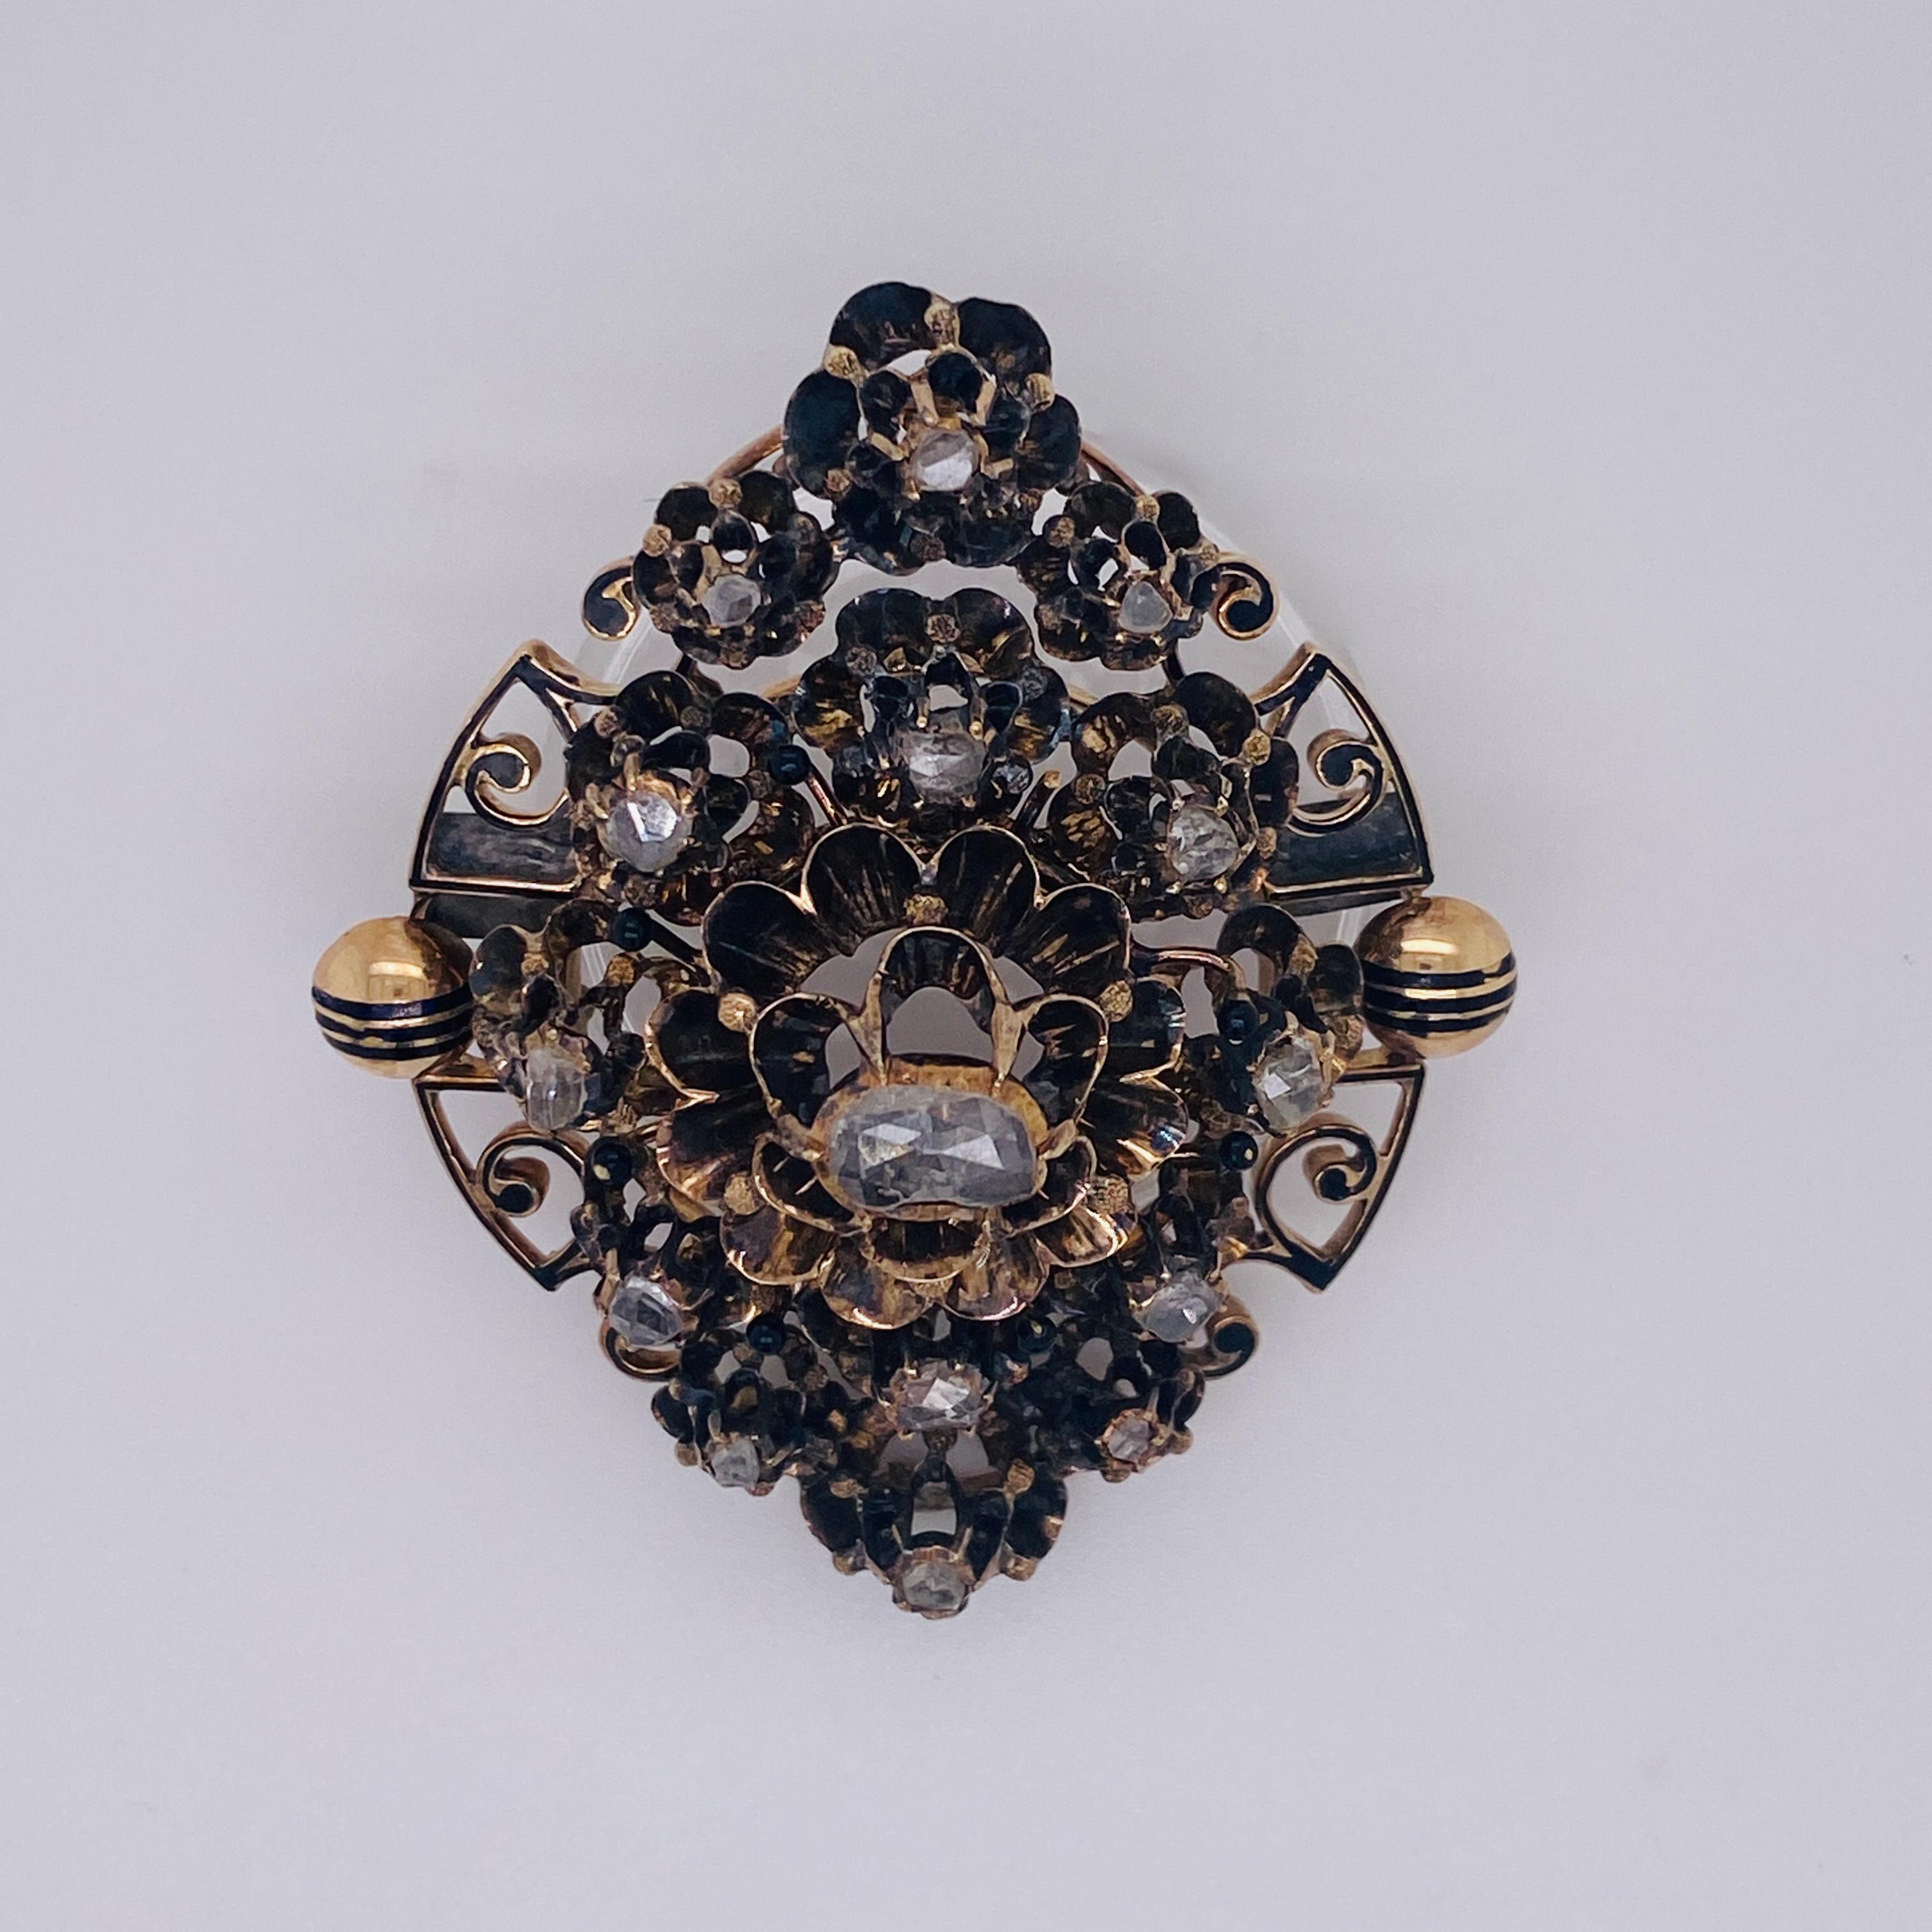 CIRCA 1800's Rosenschliff Diamant Brosche
Dies ist ein ganz besonderes Stück, das für einen ebenso besonderen Menschen bestimmt ist. Man muss schon ein echter Kenner von Vintage-Schmuck sein, um die Geschichte dieser schönen Brosche wirklich zu